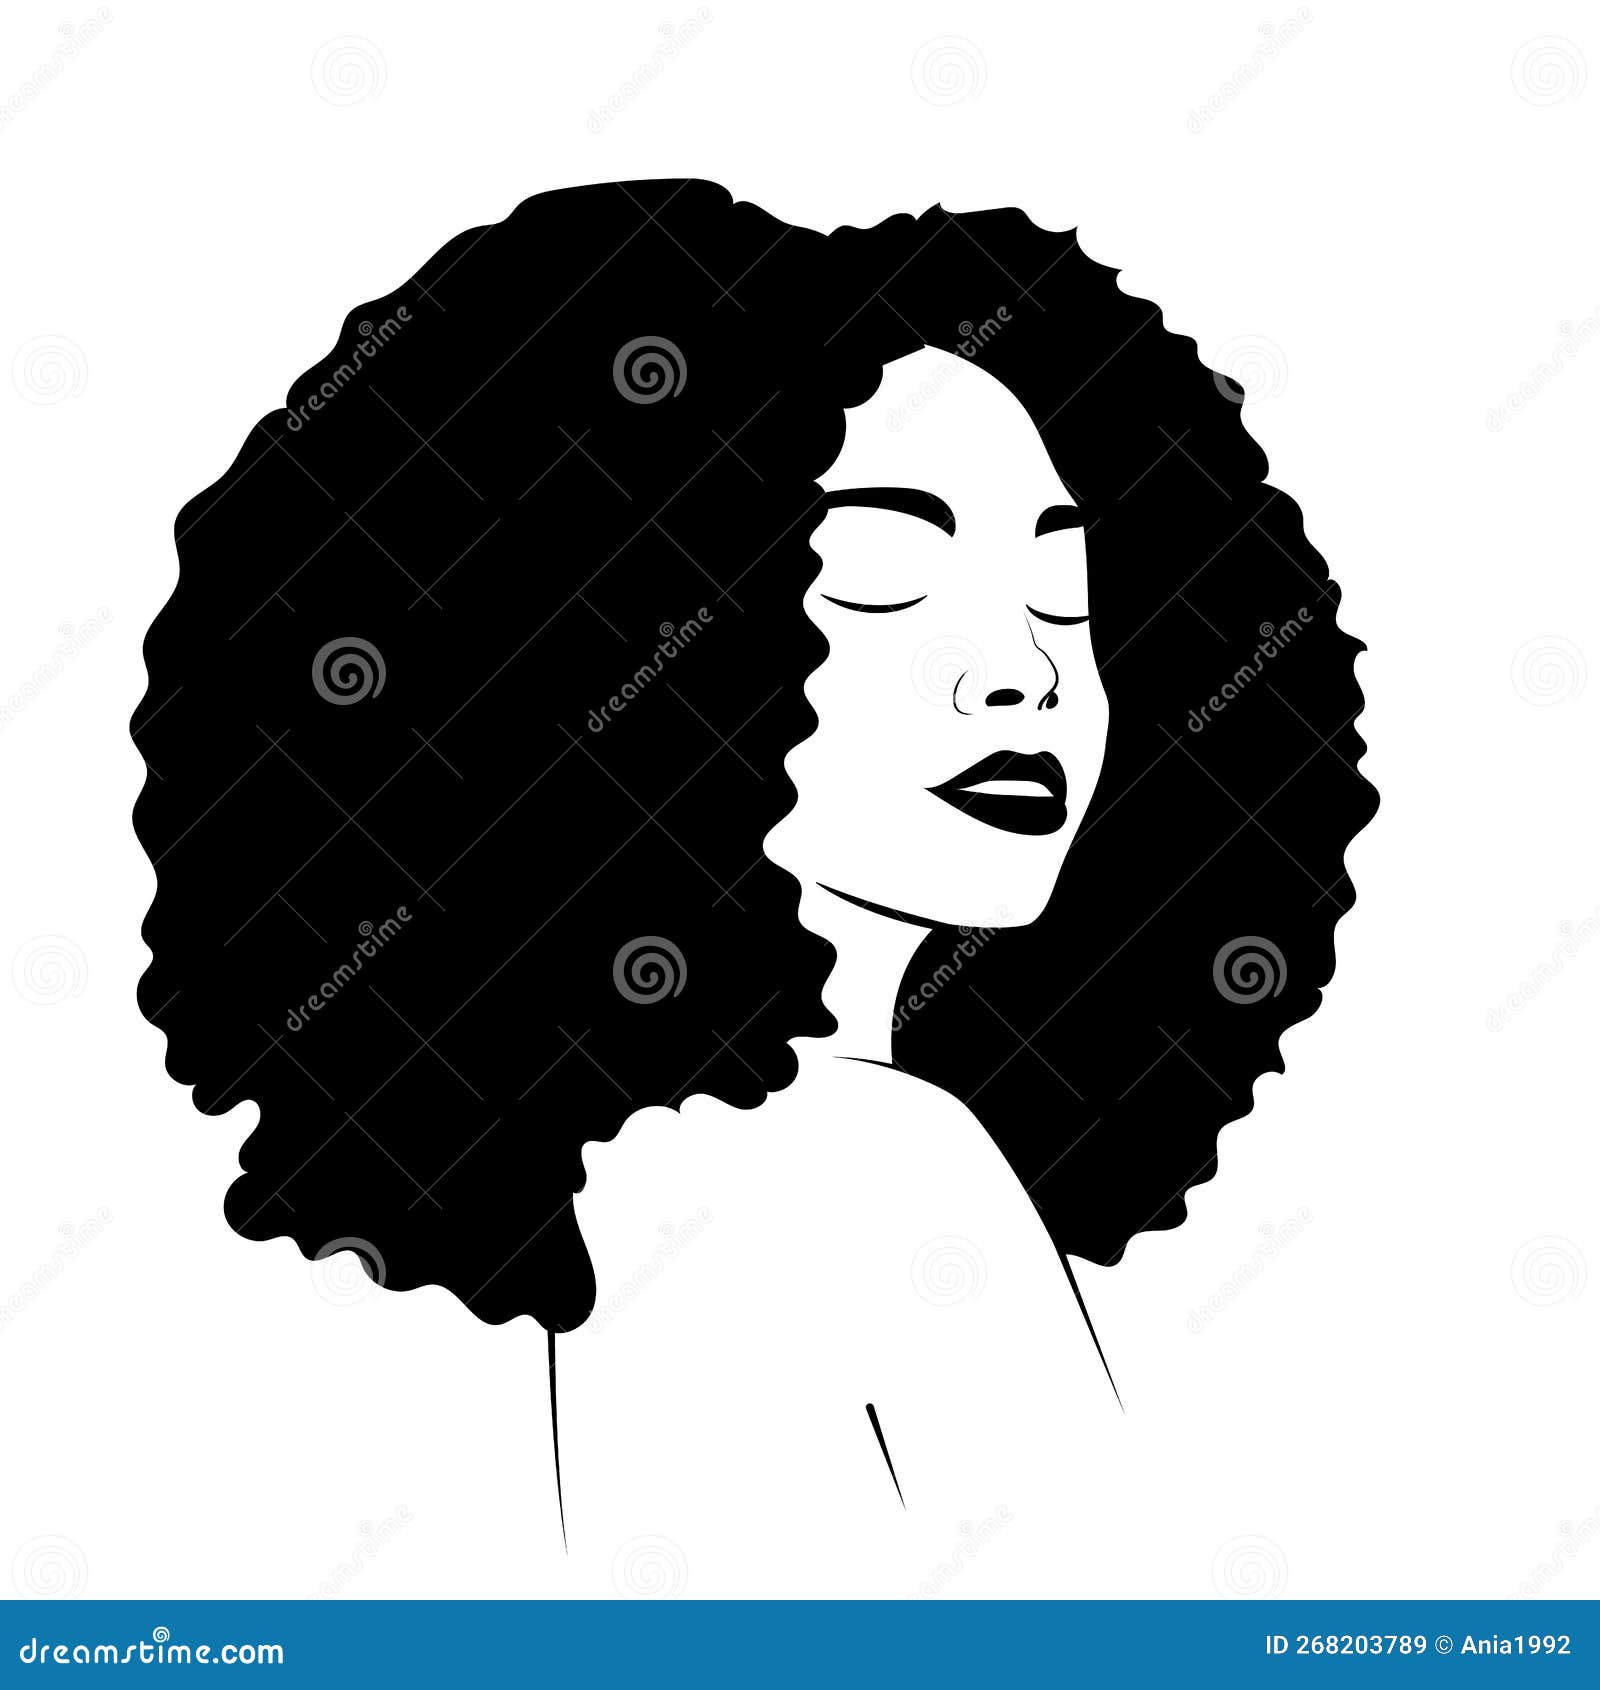 Best '90s Hairstyles For Black Women - L'Oréal Paris